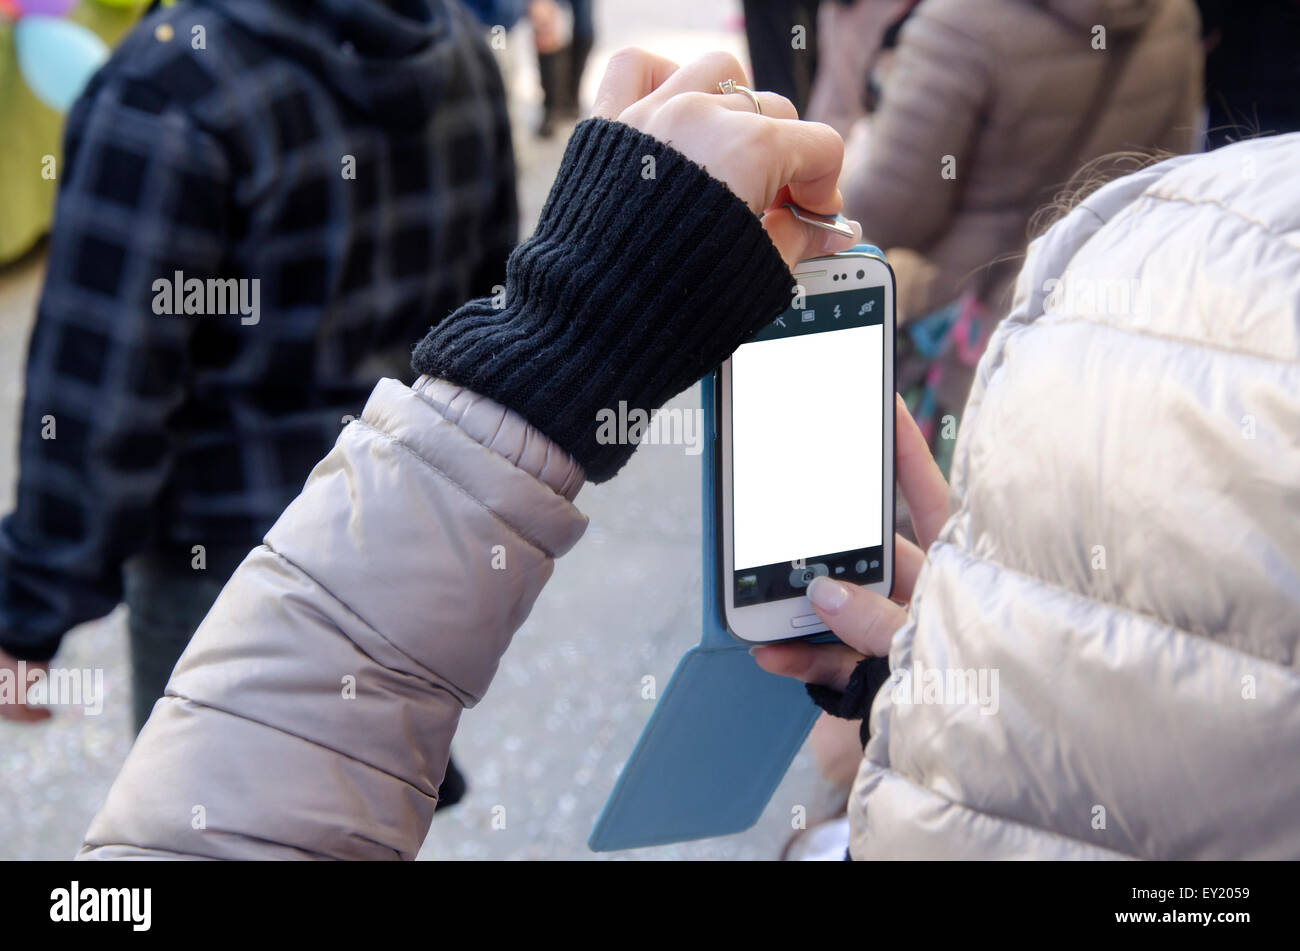 Les mains des femmes de prendre photo avec le smartphone et l'écran blanc parmi les gens sur février 28,2015 à Villasimius, Italie Banque D'Images